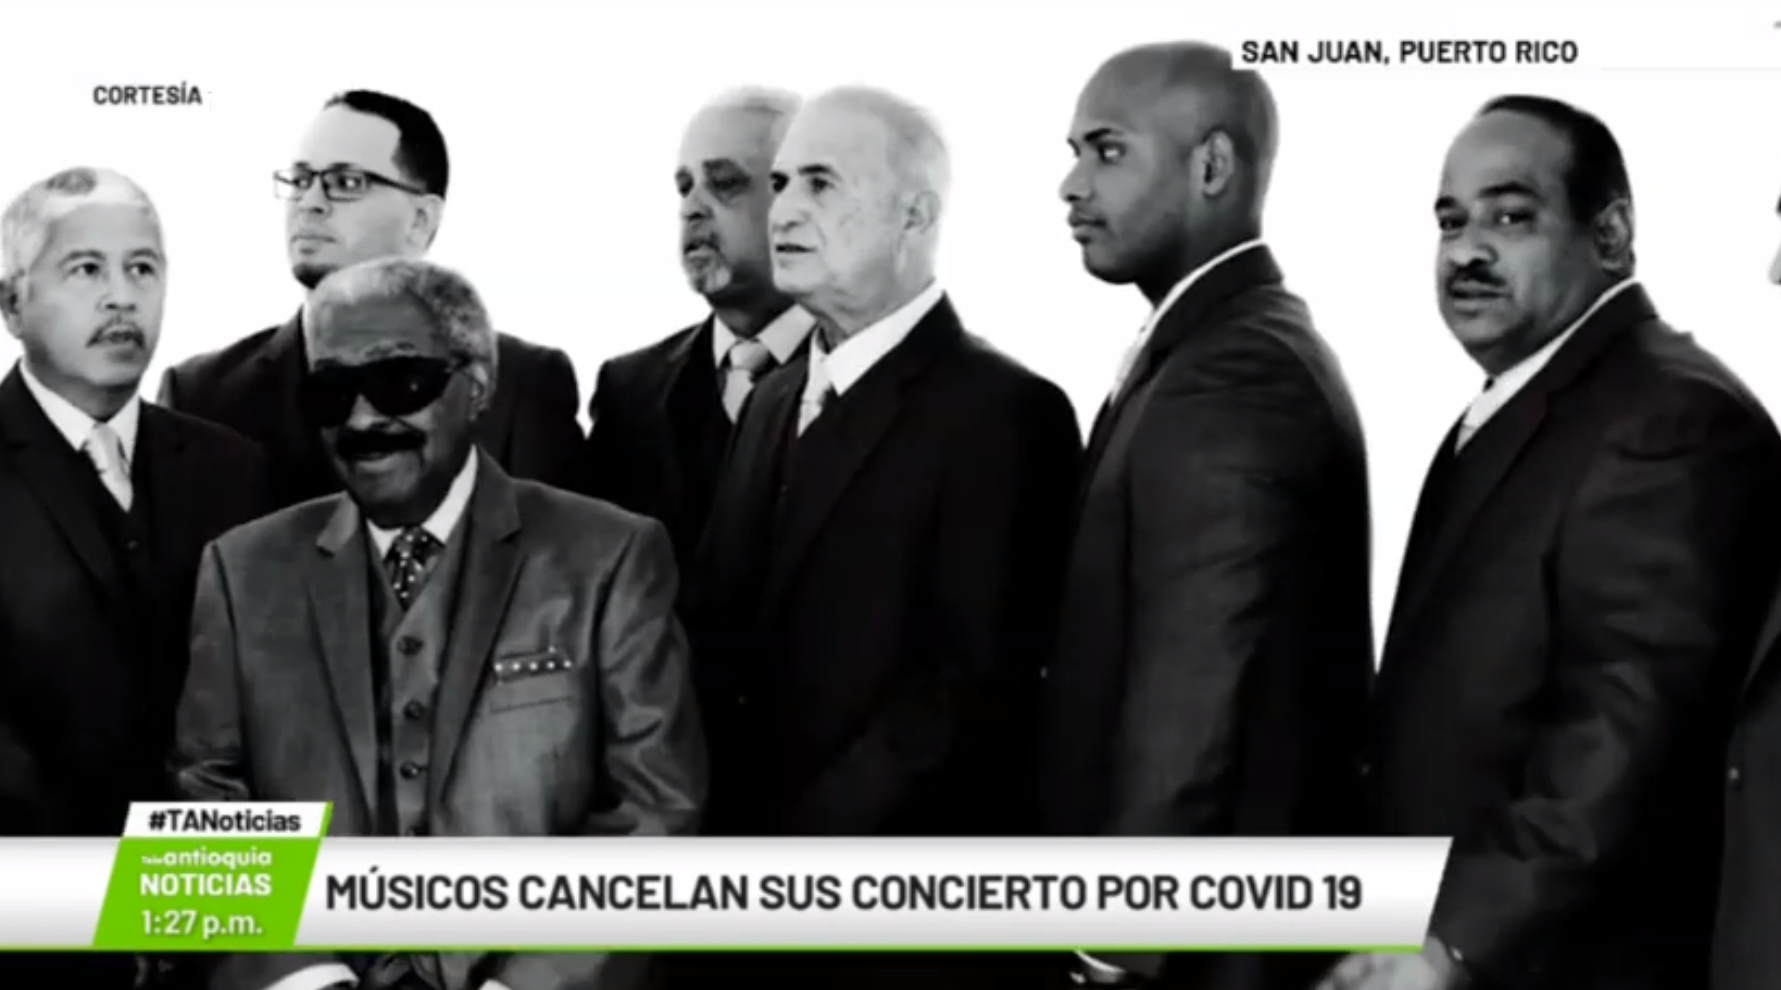 Músicos cancelan su concierto por Covid-19